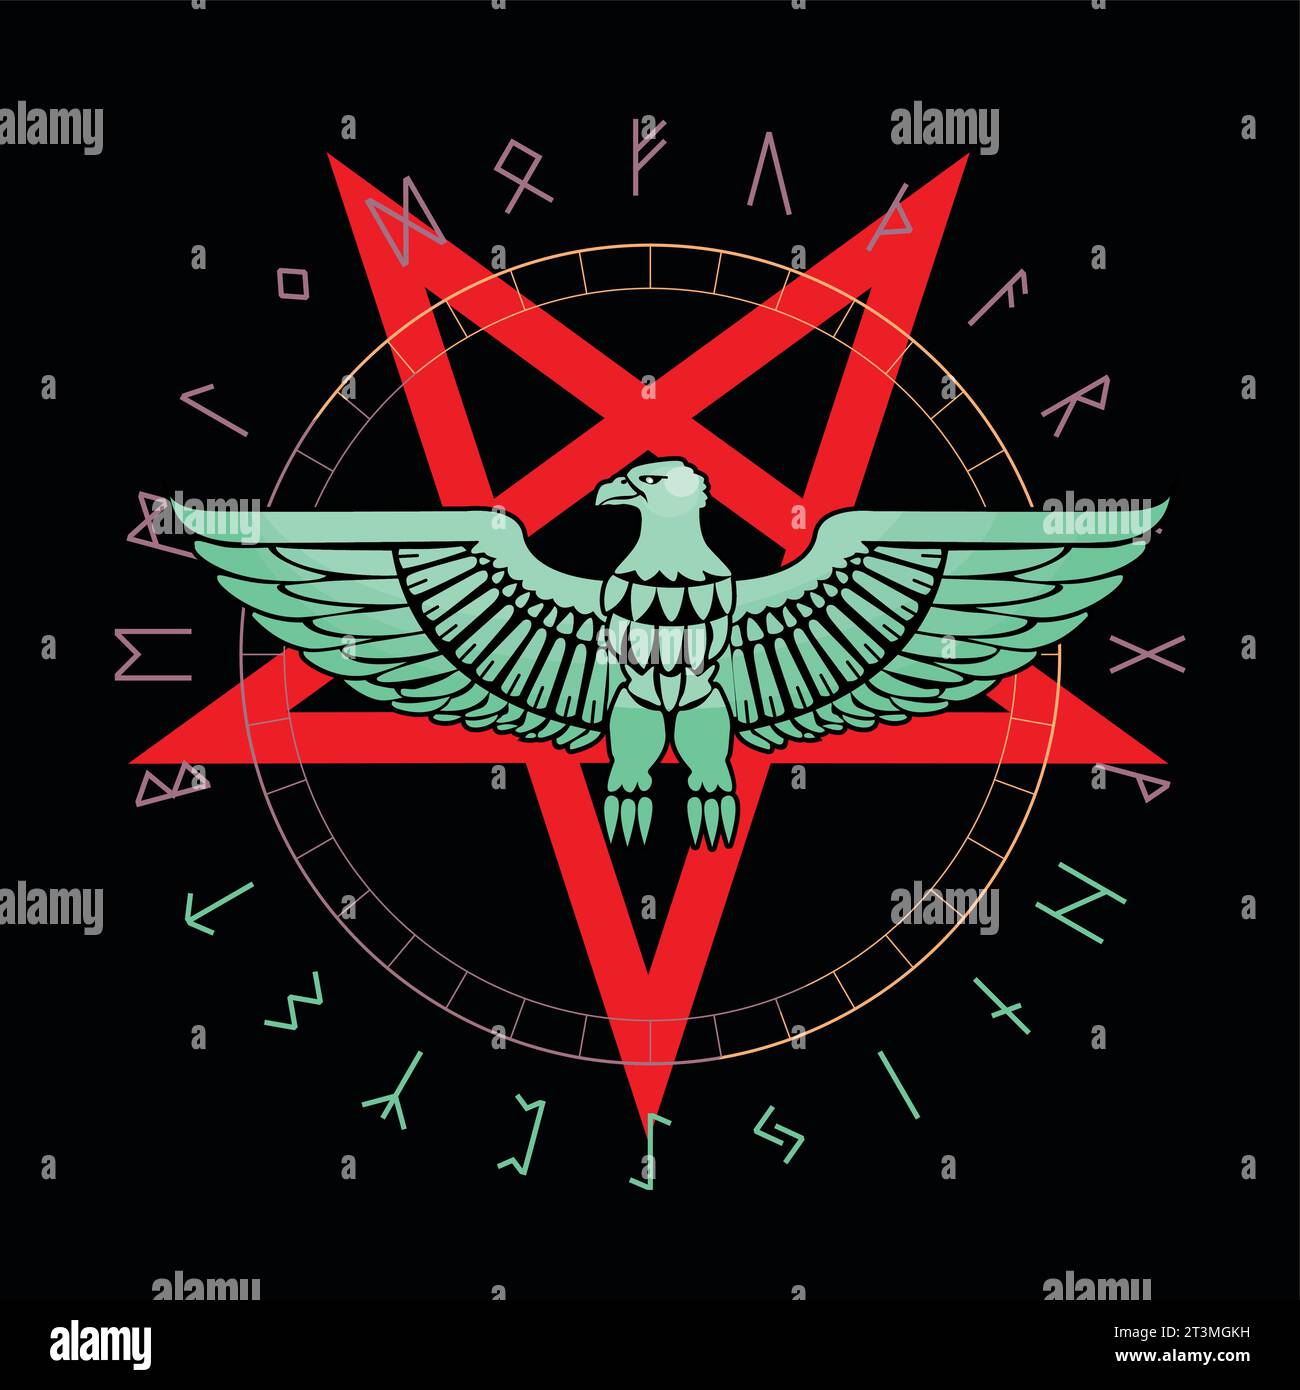 T-Shirt-Design eines Adlers, eines umgedrehten fünfzackigen Sterns, umgeben von einem Runenalphabet. Gute Illustration für satanische Themen. Stock Vektor